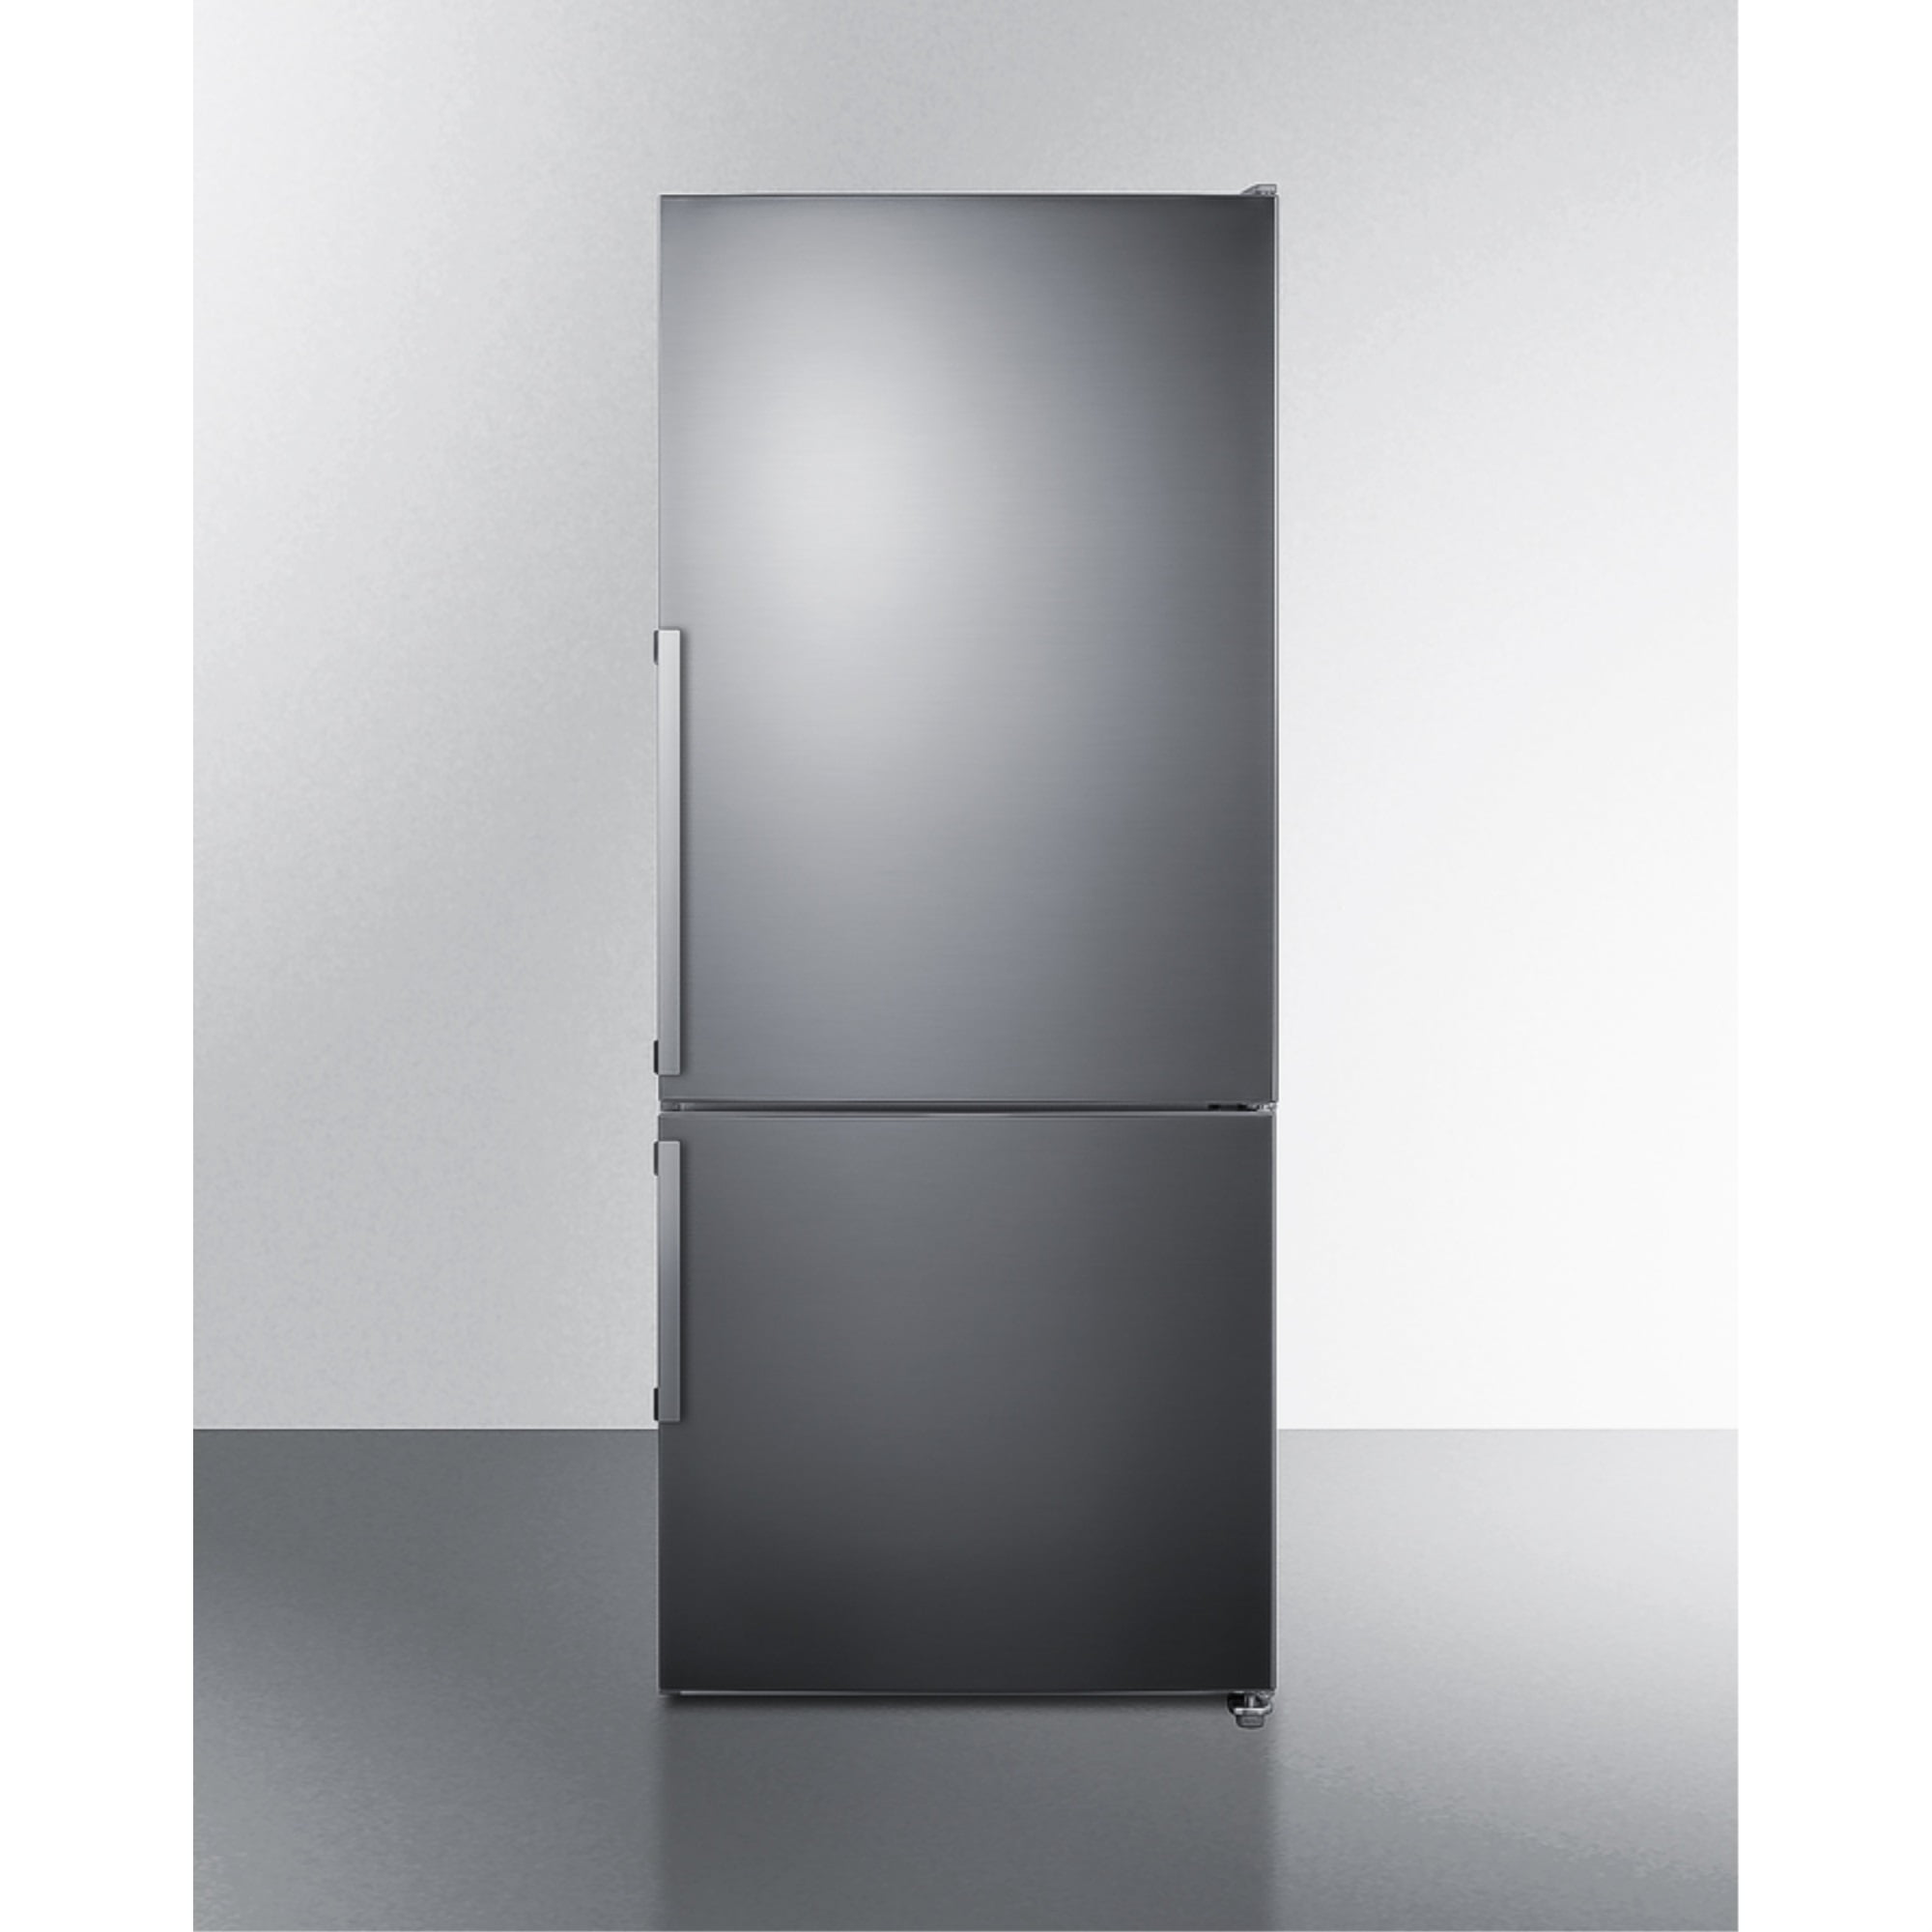 Smad 30 in Freestanding Top Freezer Refrigerator 18.3 Cu ft Stainless Steel  2 Door - Walmart.com